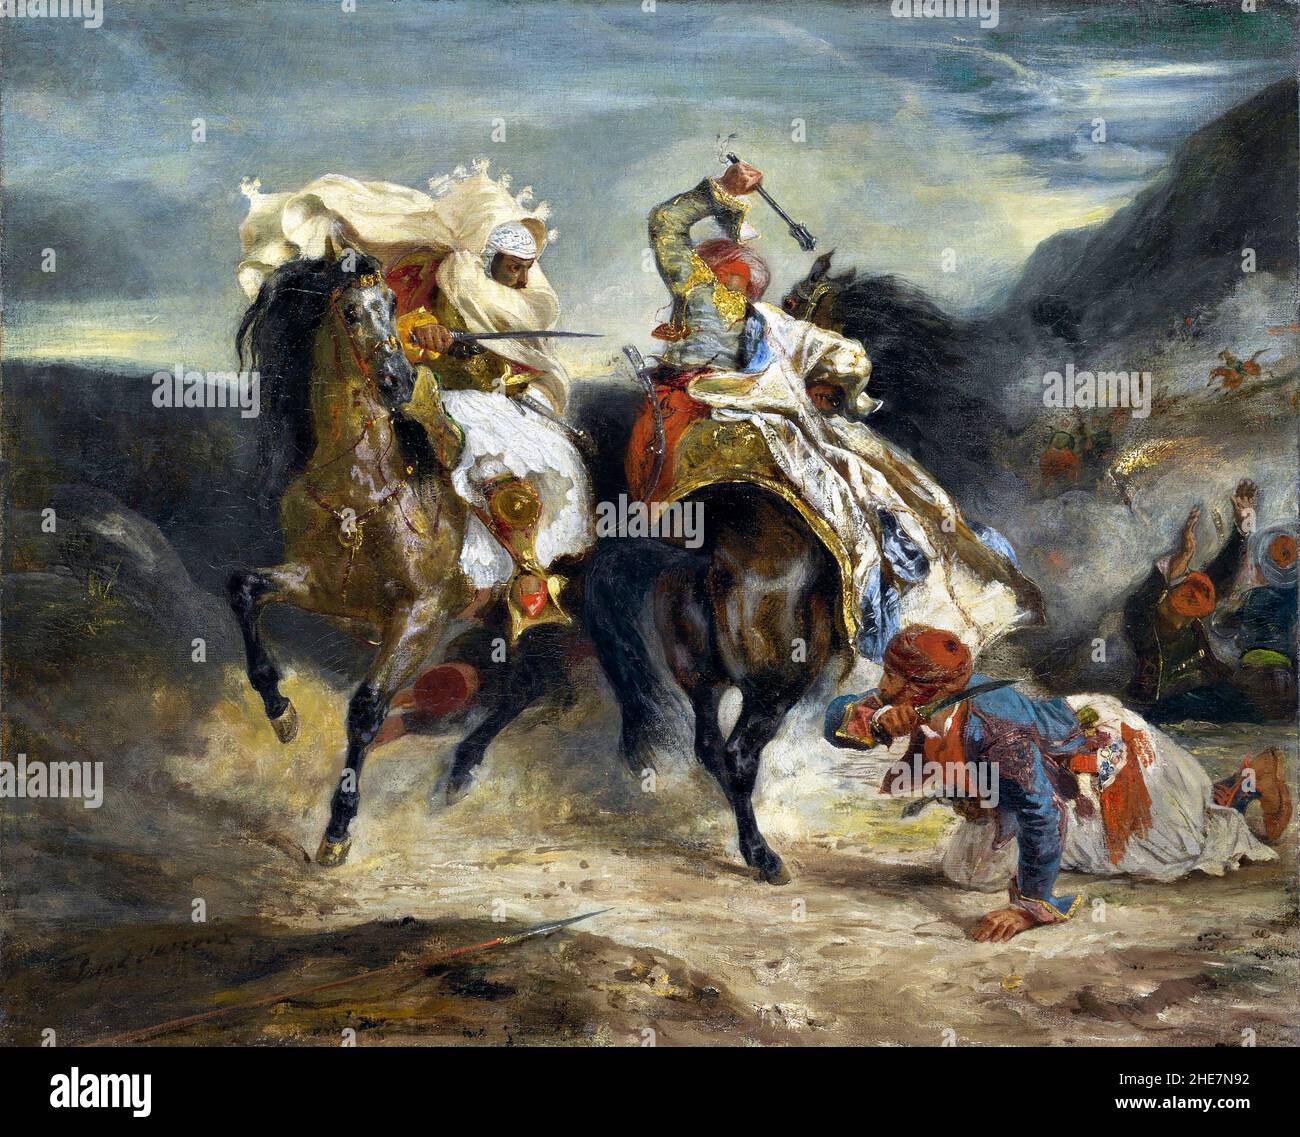 Le combat de la Giaur et Hassan par Eugène Delacroix (1798-1863), 1826 Banque D'Images